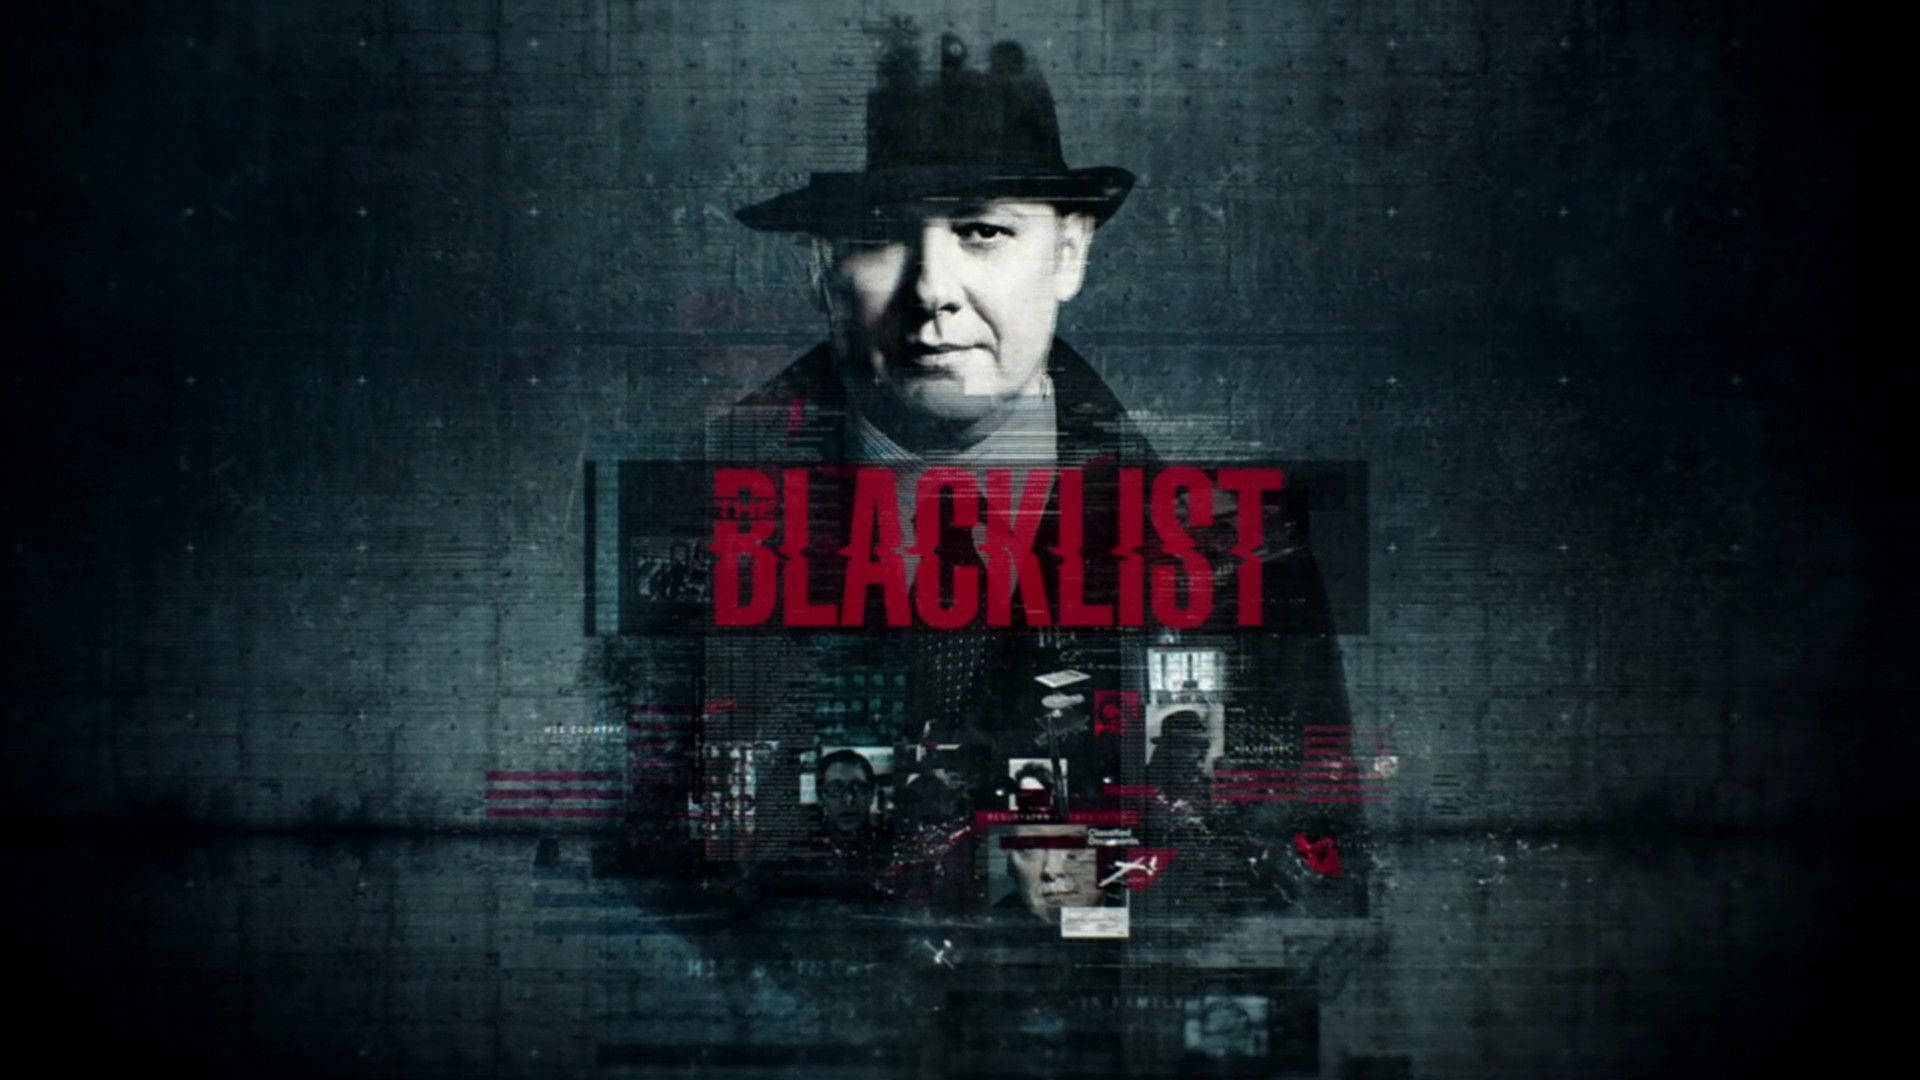 The Blacklist Background Wallpaper